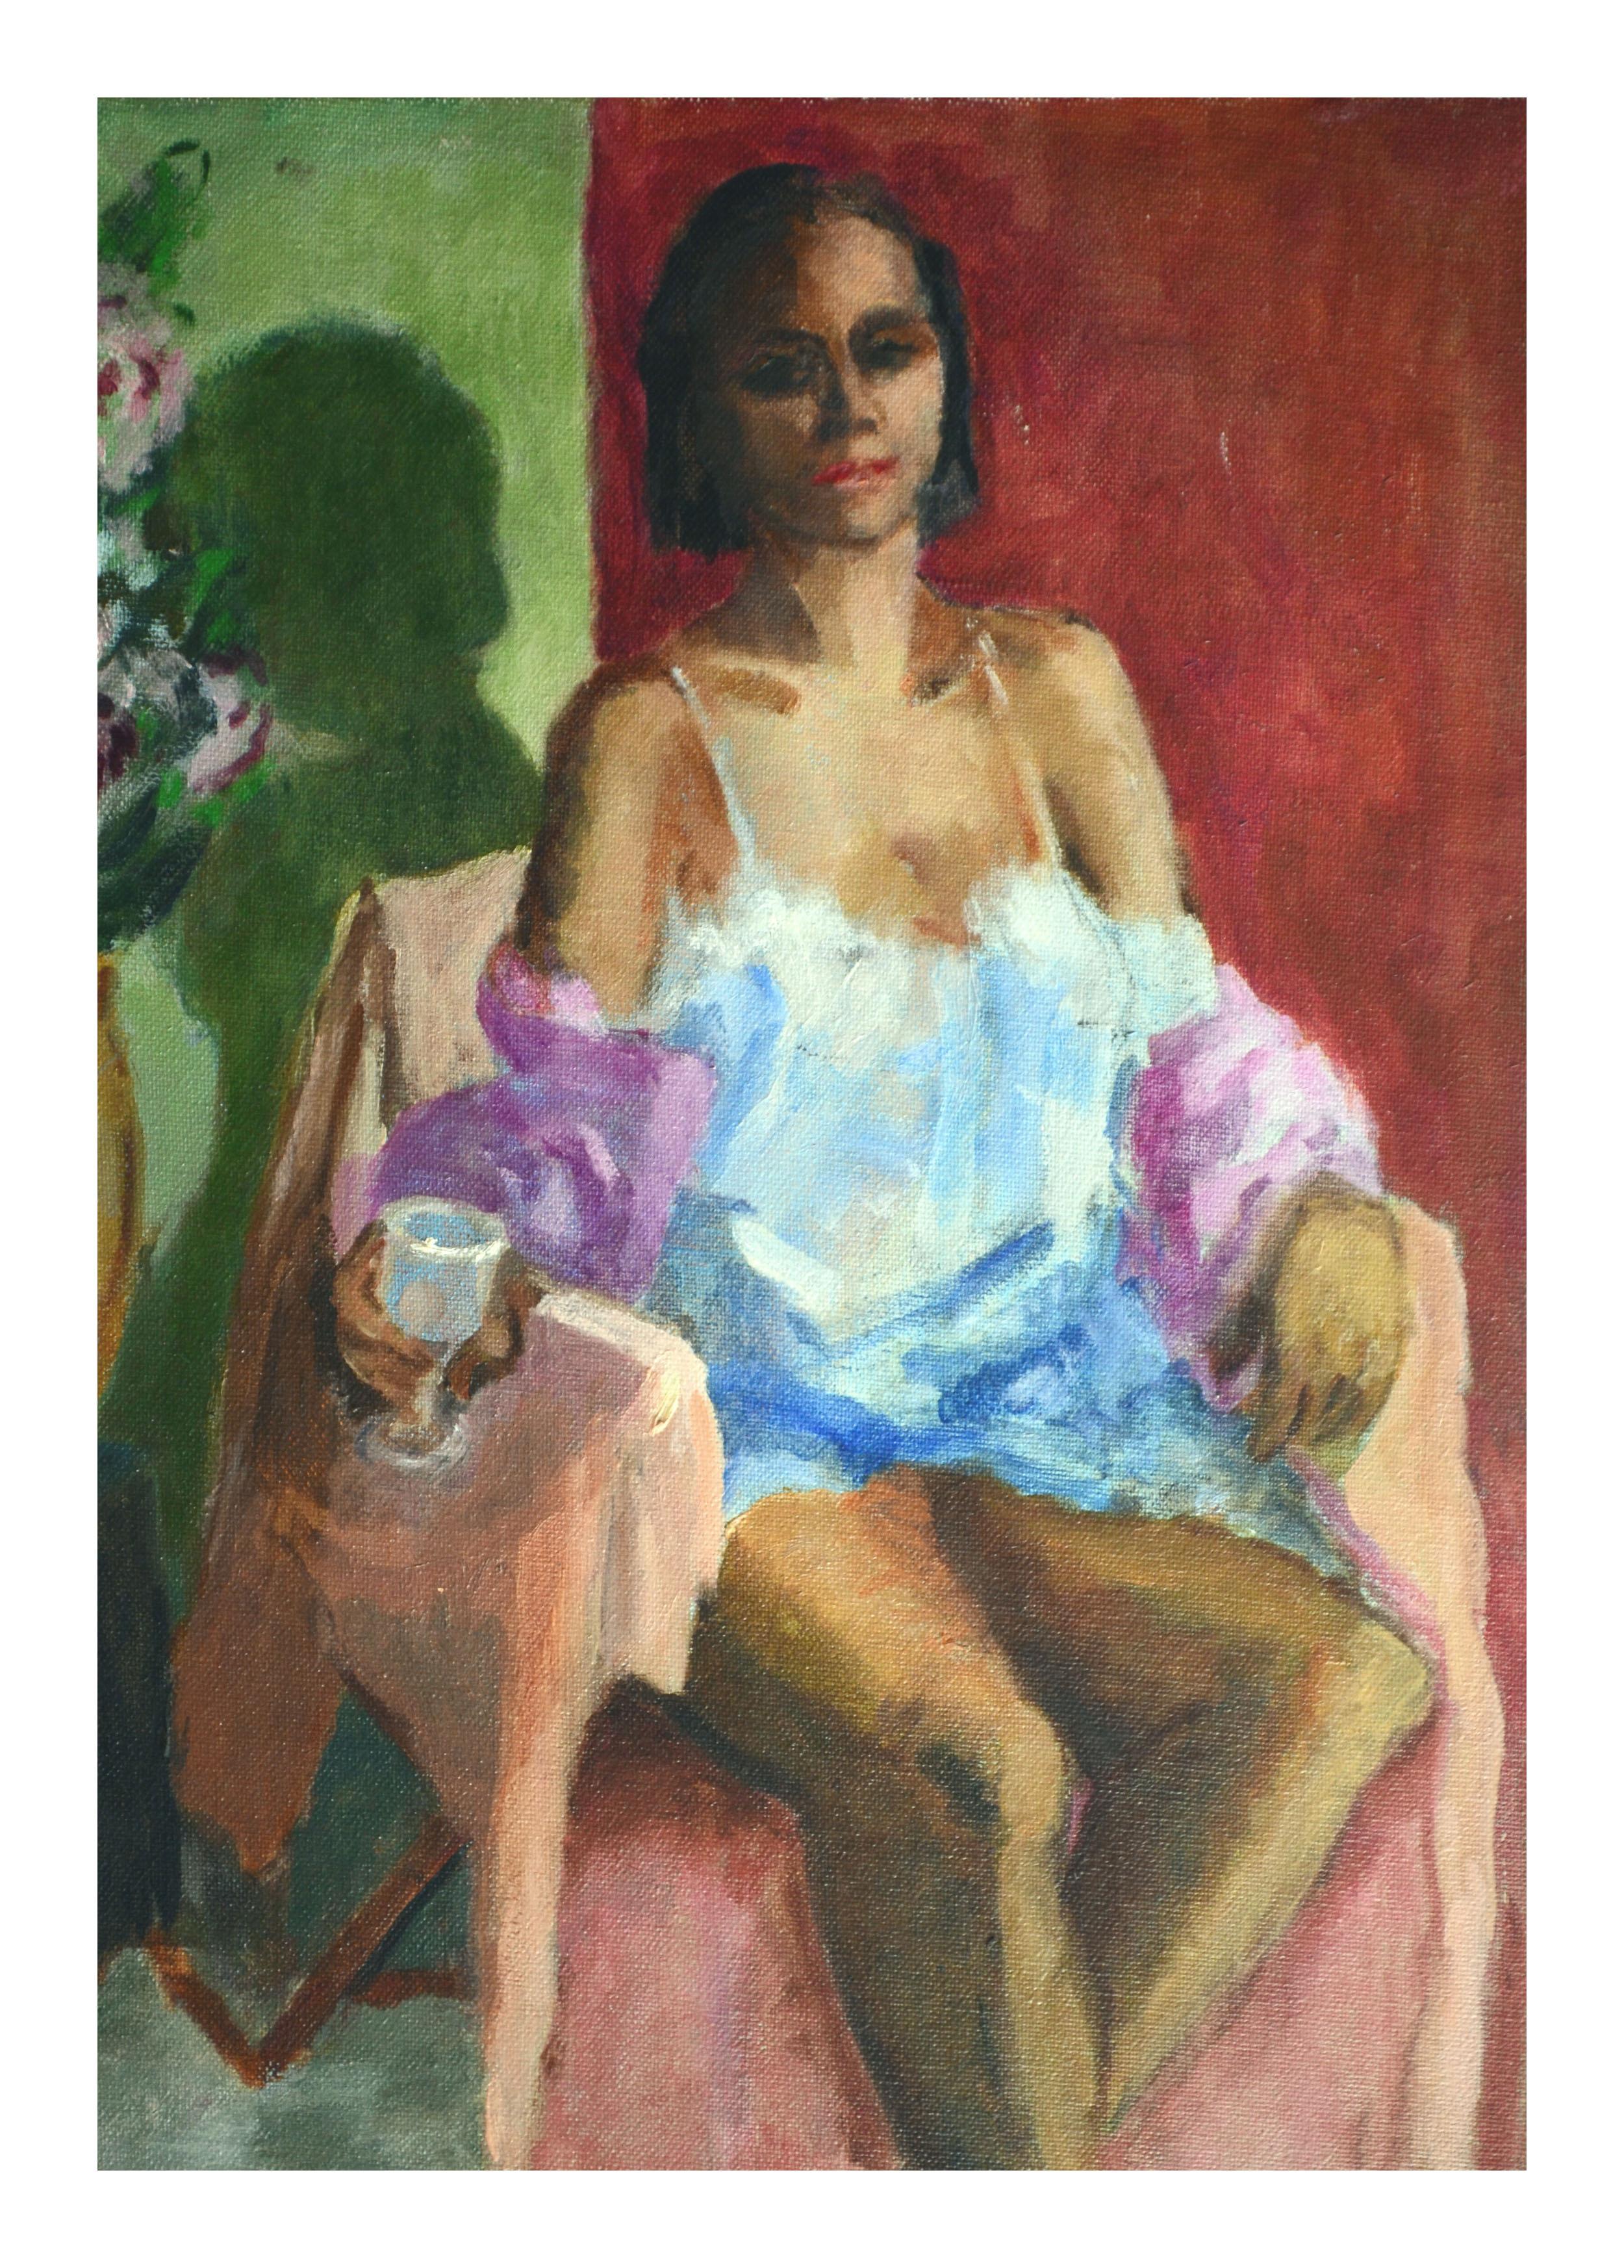 Sitzende Figur im Boudoir-Stil – Painting von Patricia Gillfillan